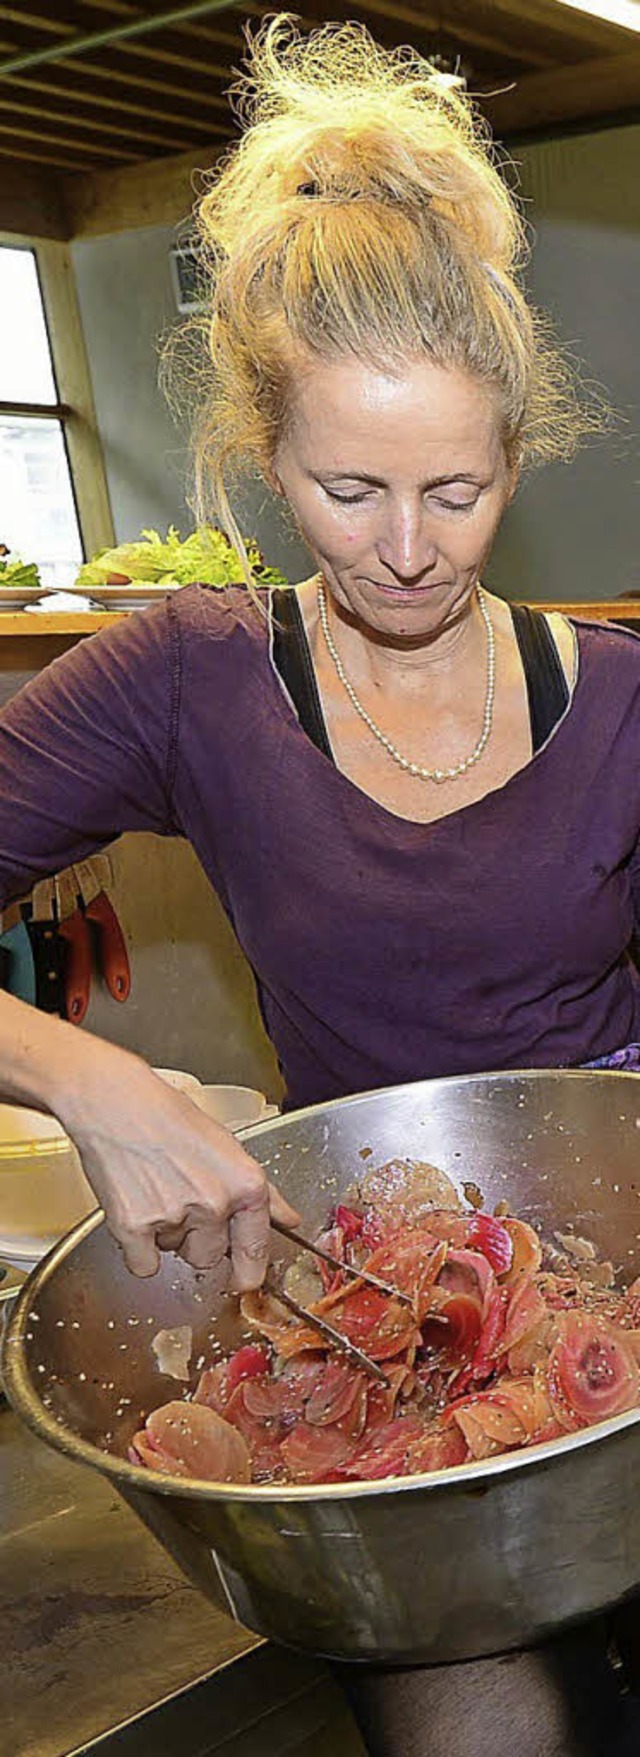 Gastronomin Solveig Hansen bereitet ei...at zu, der typisch zartrosa schimmert.  | Foto: Ingo Schneider